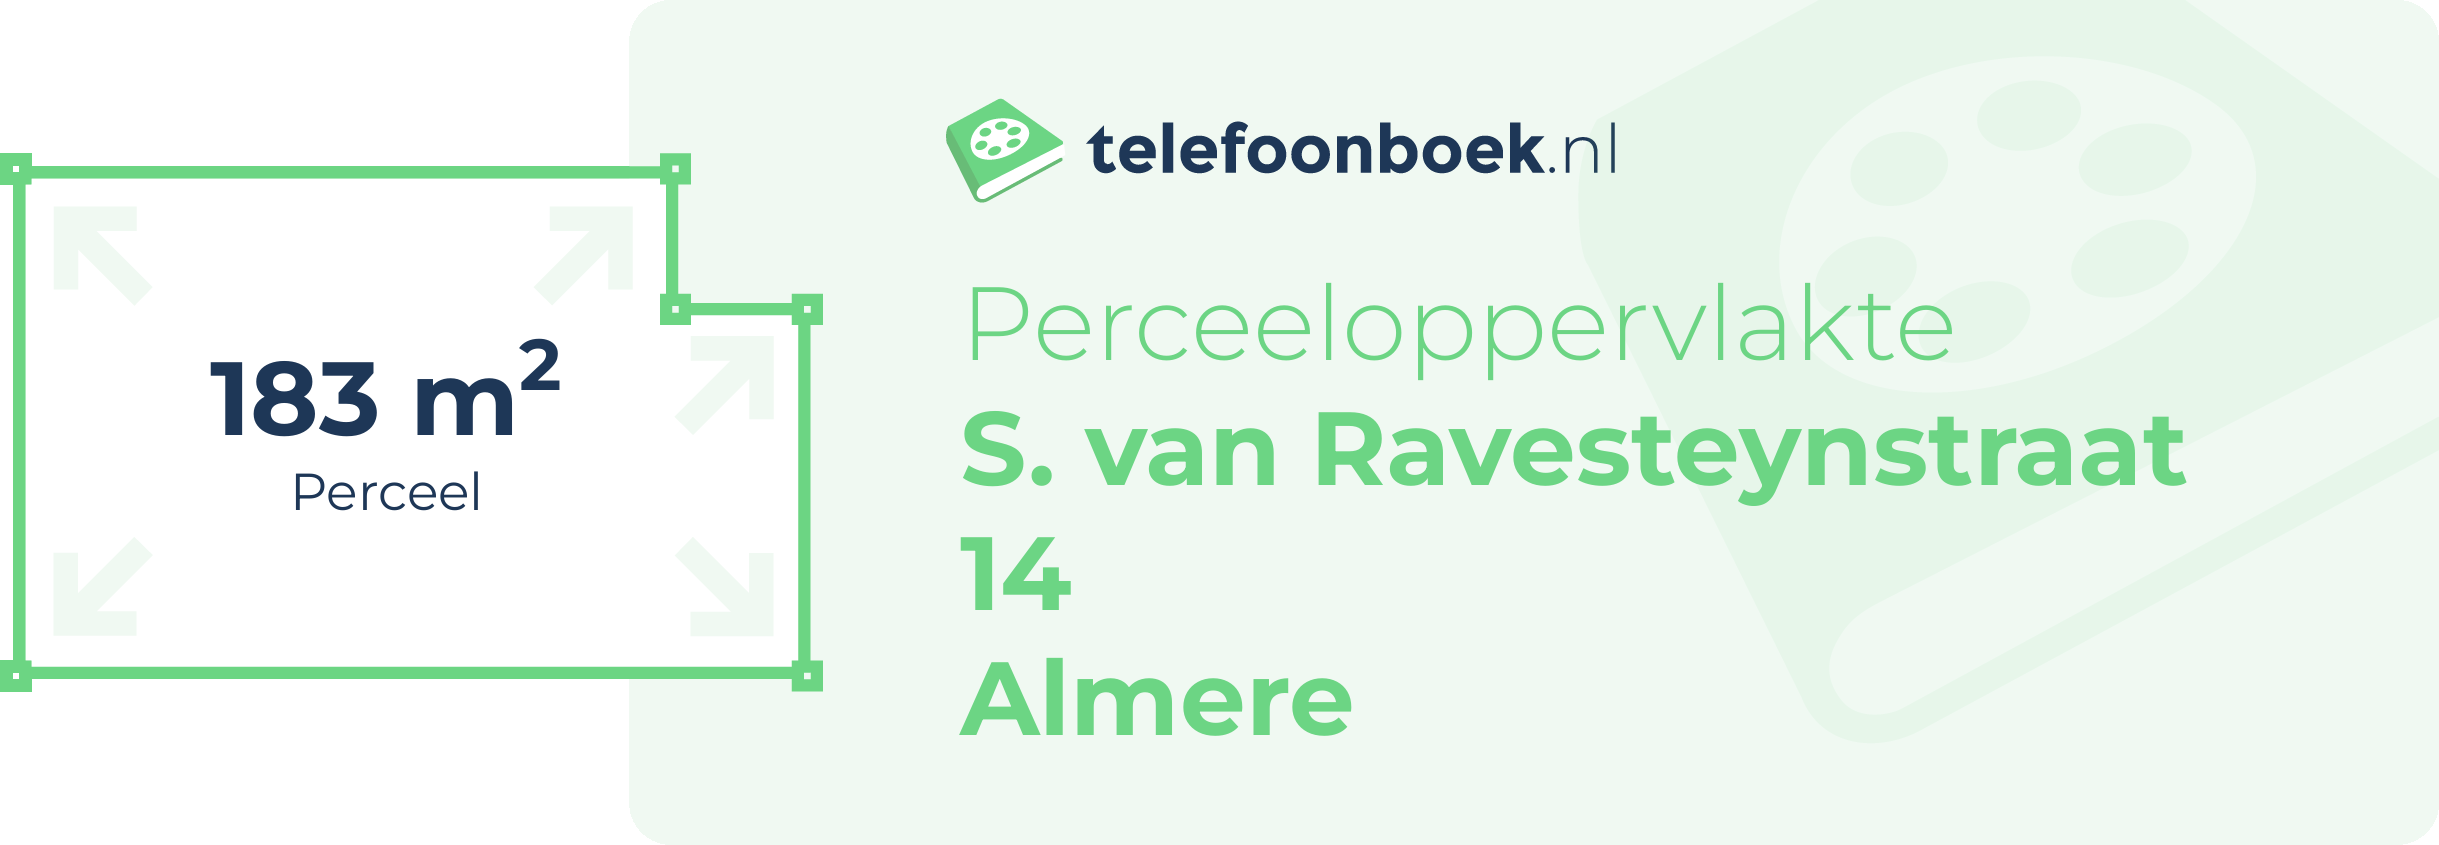 Perceeloppervlakte S. Van Ravesteynstraat 14 Almere